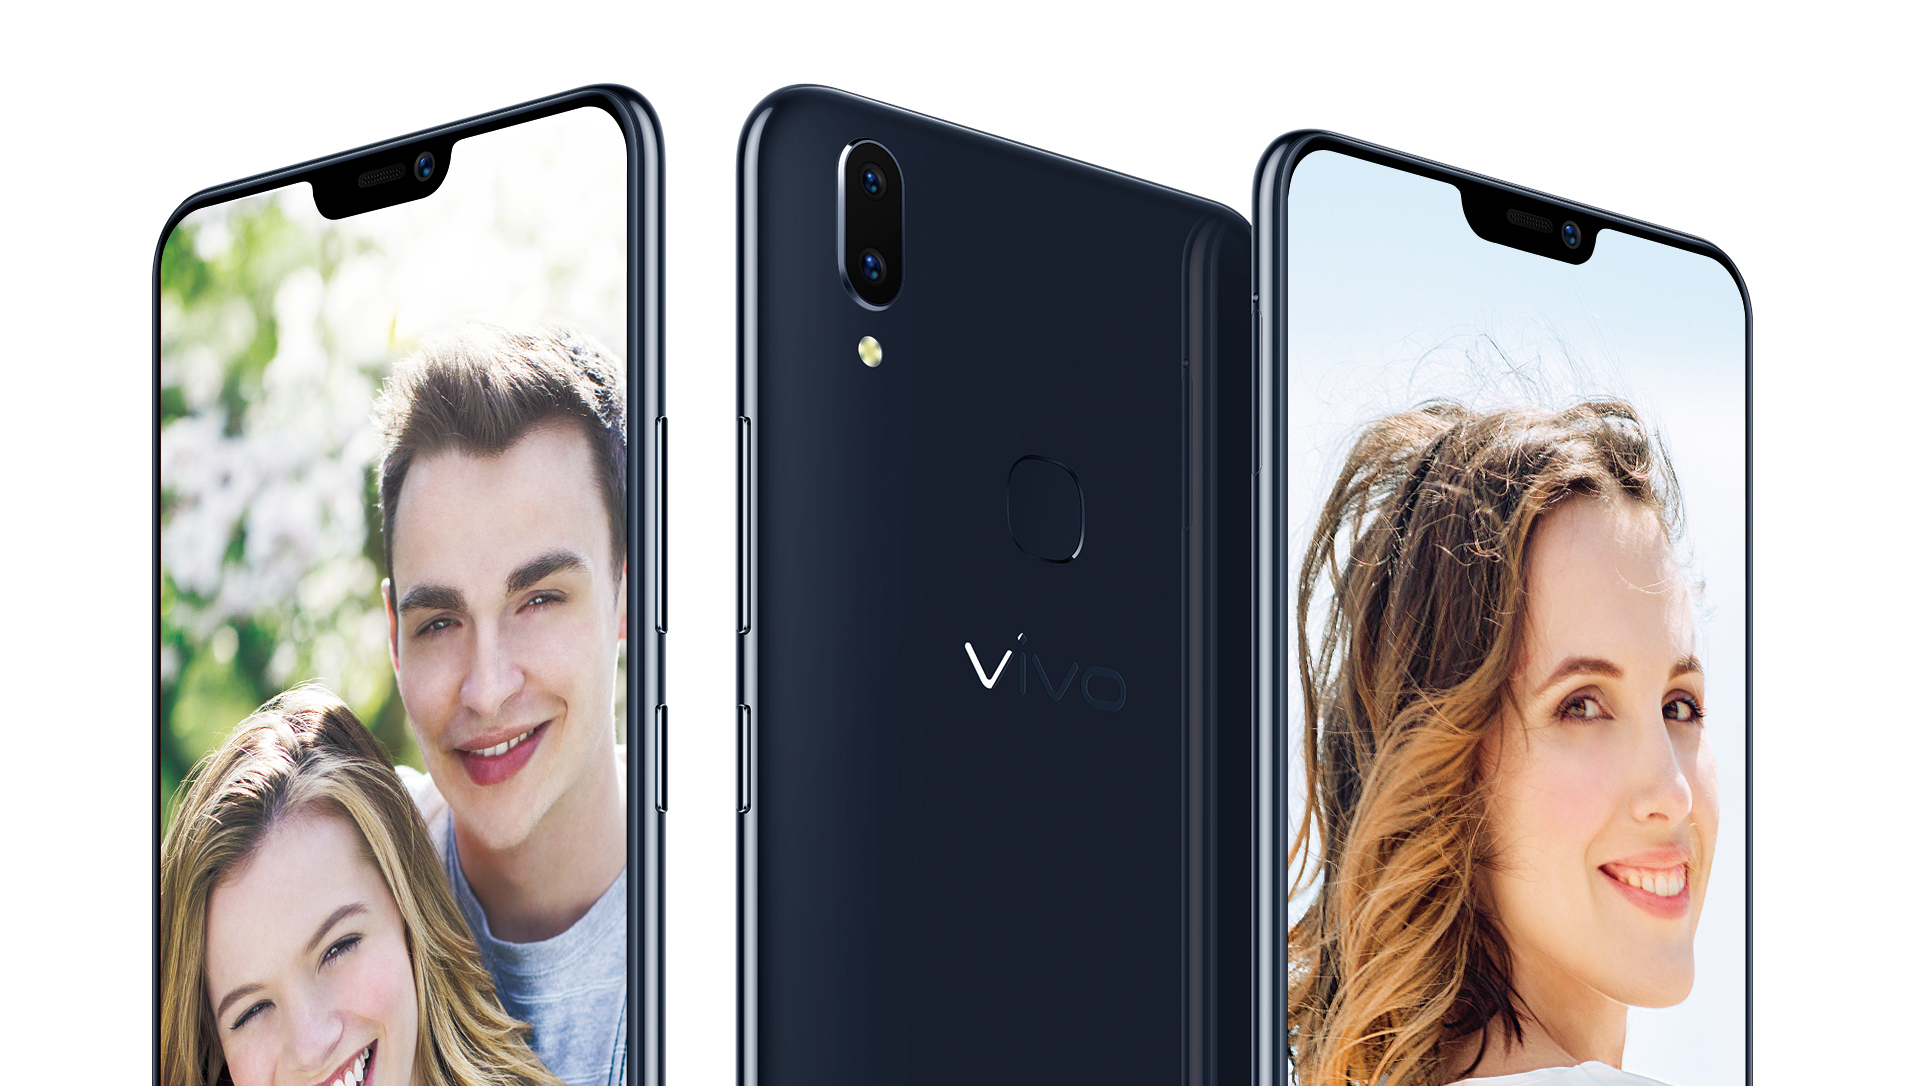 Vivo xác nhận V9 sẽ có thiết kế tai thỏ và camera kép, ra mắt vào cuối tháng 3